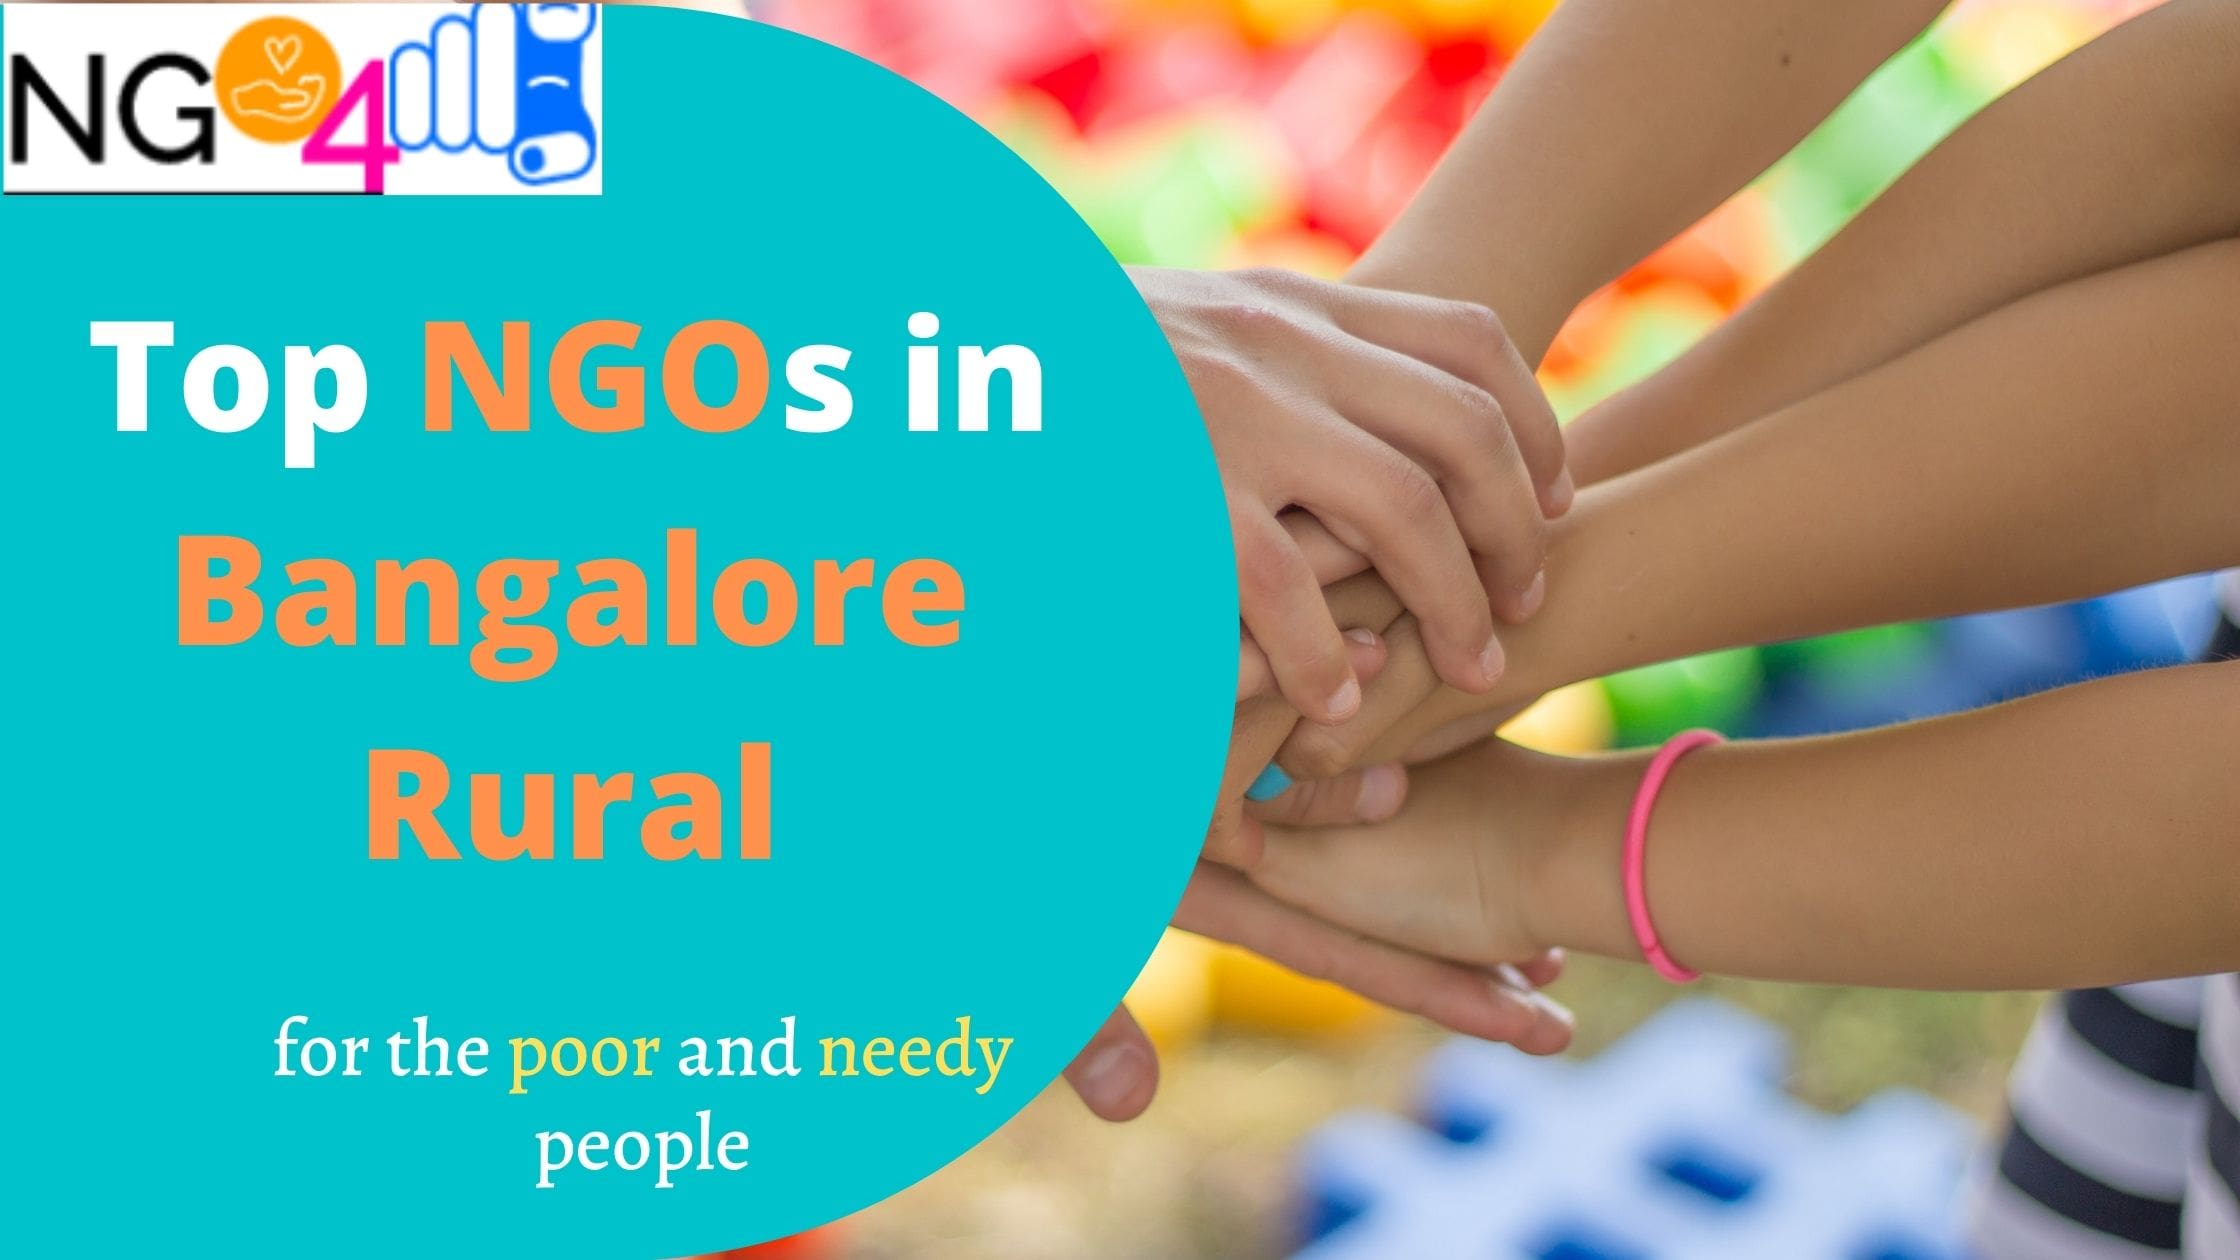 NGOs in Bangalore Rural